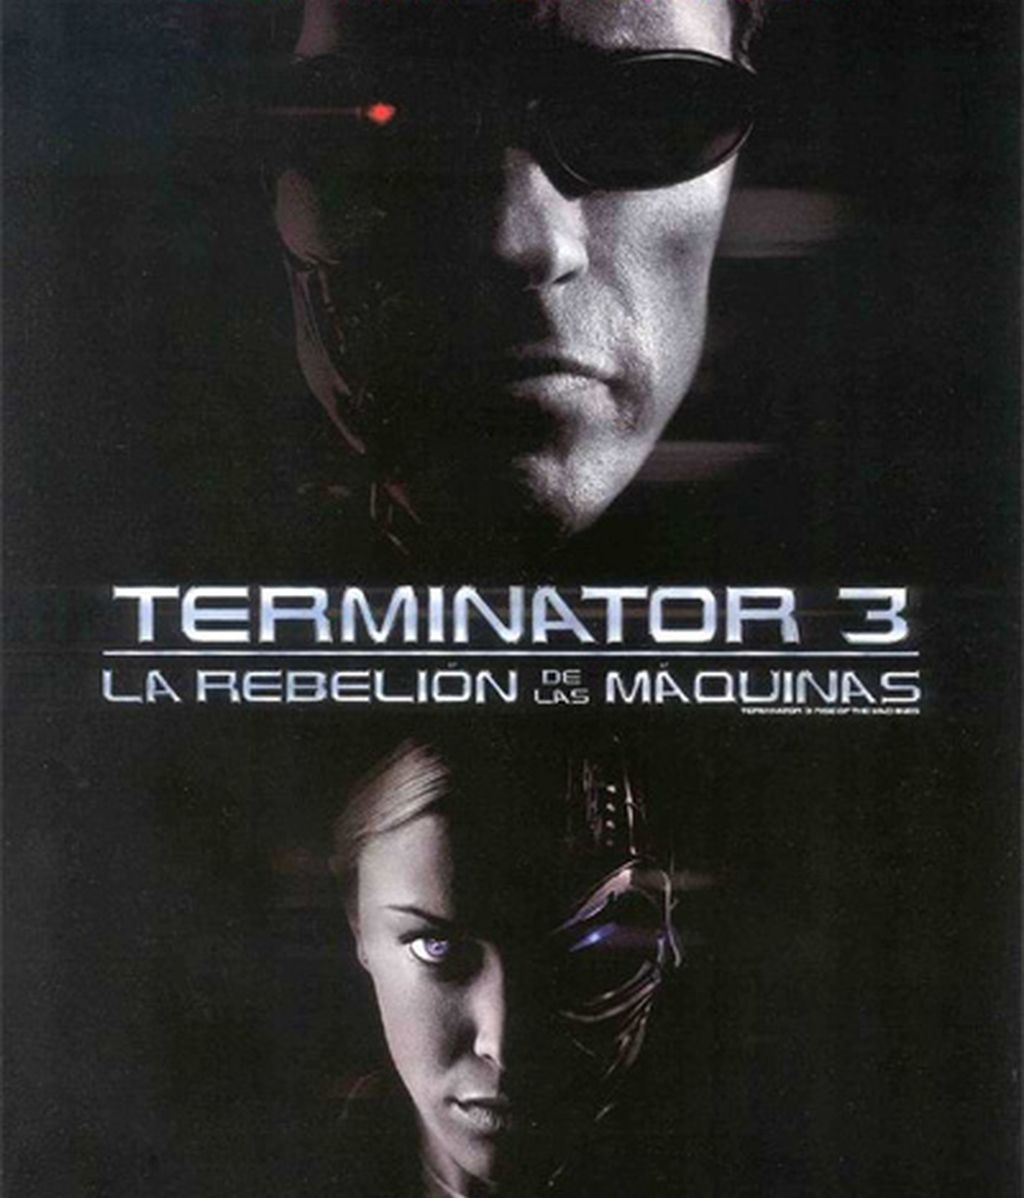 La saga de Terminator